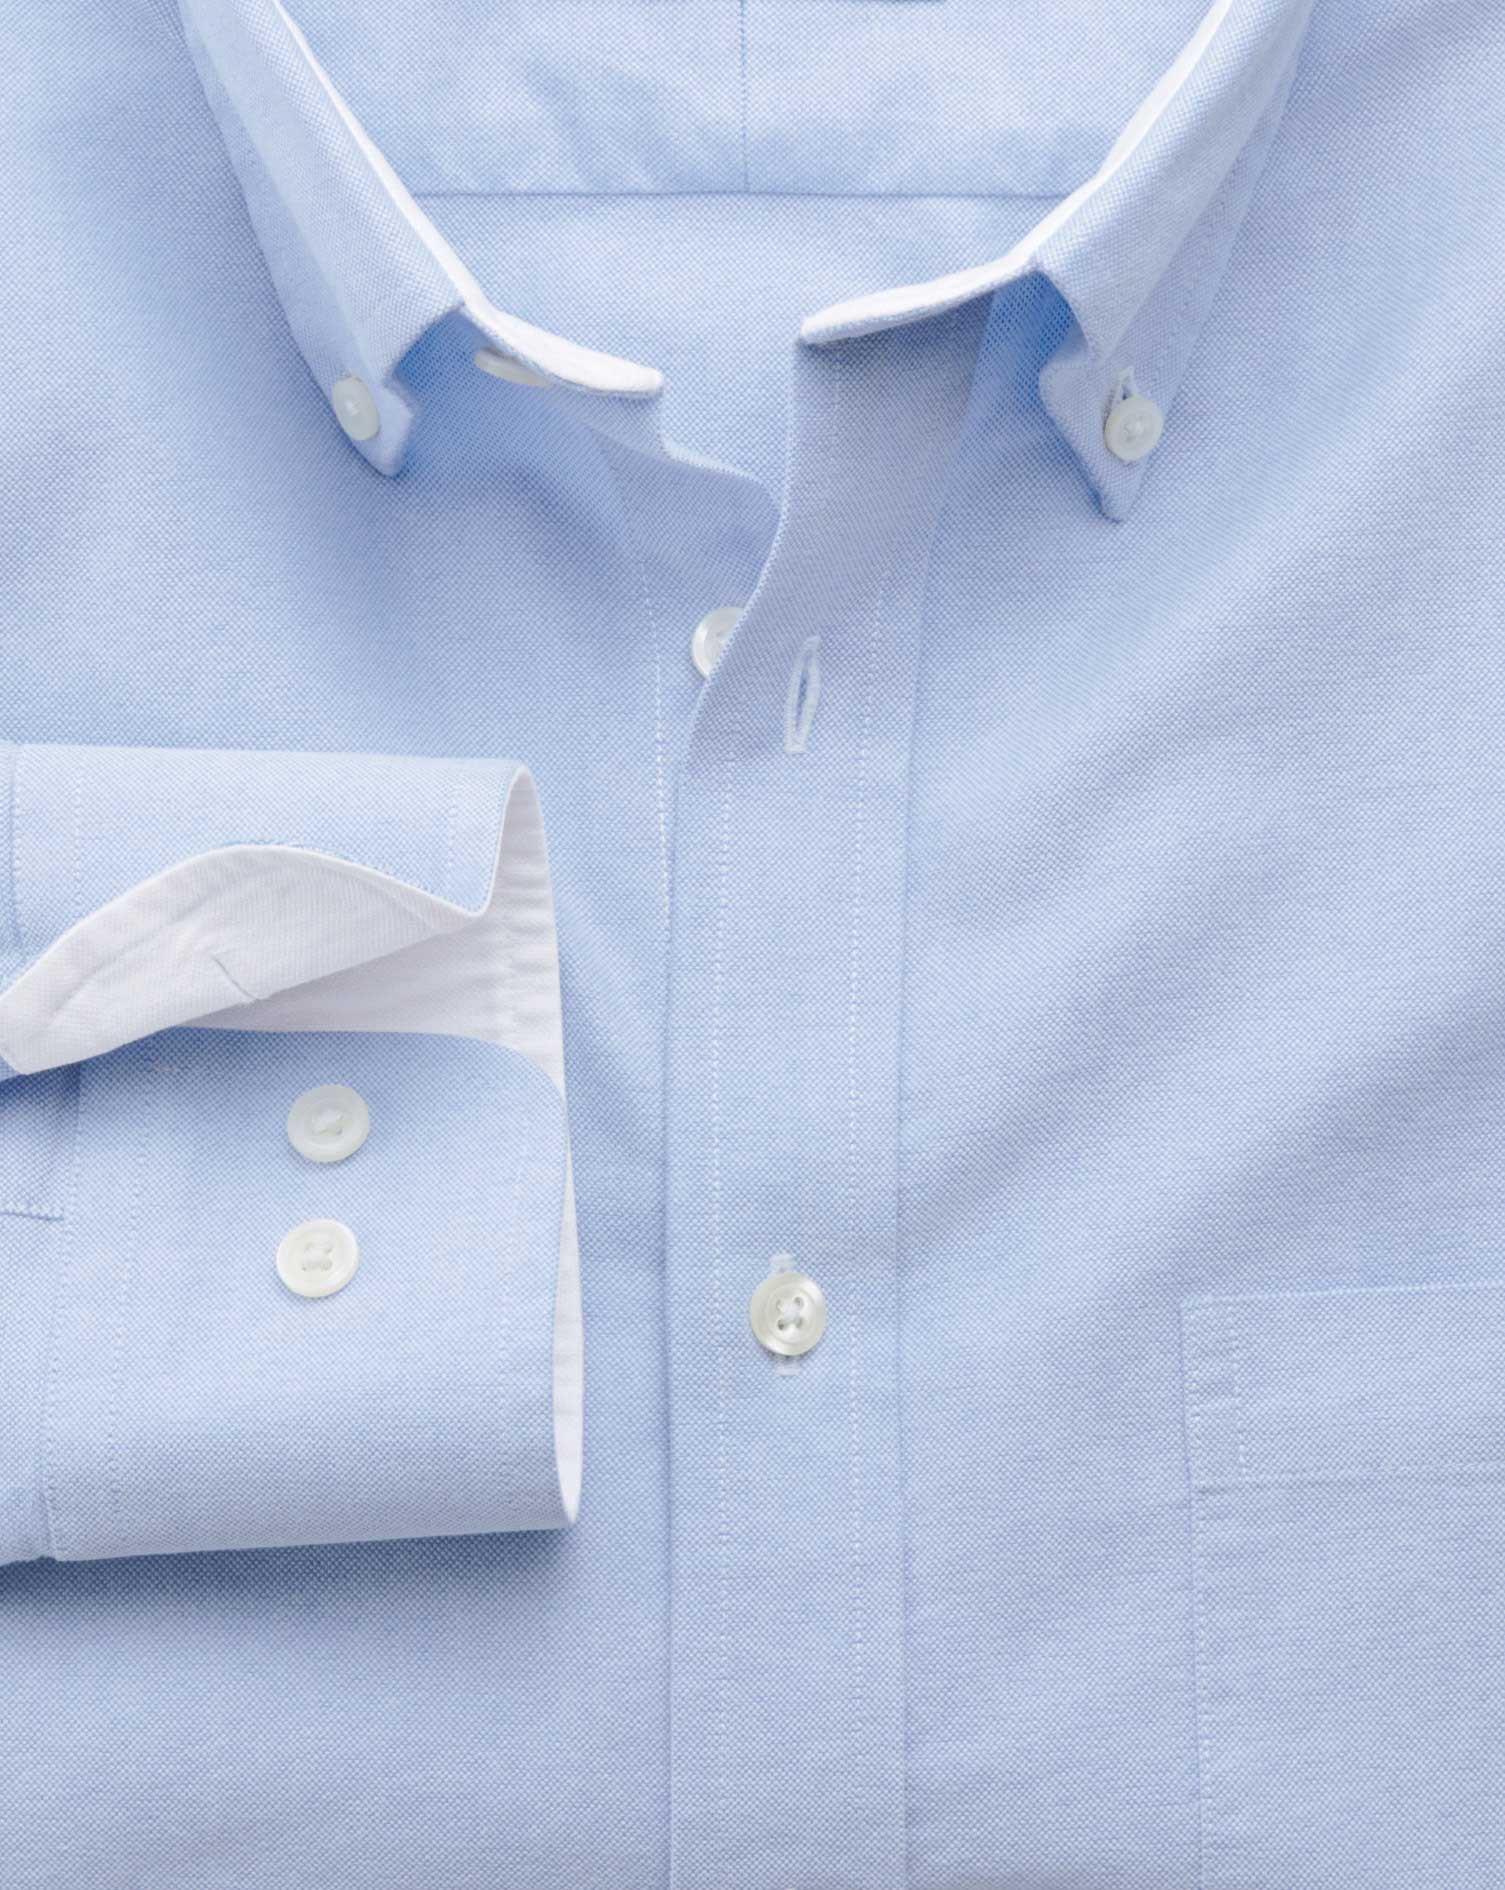 Áo Oxford thường có cổ gập cài nút (button down), chất vải cotton cứng và kiểu dệt họa tiết đan rổ đặc trưng